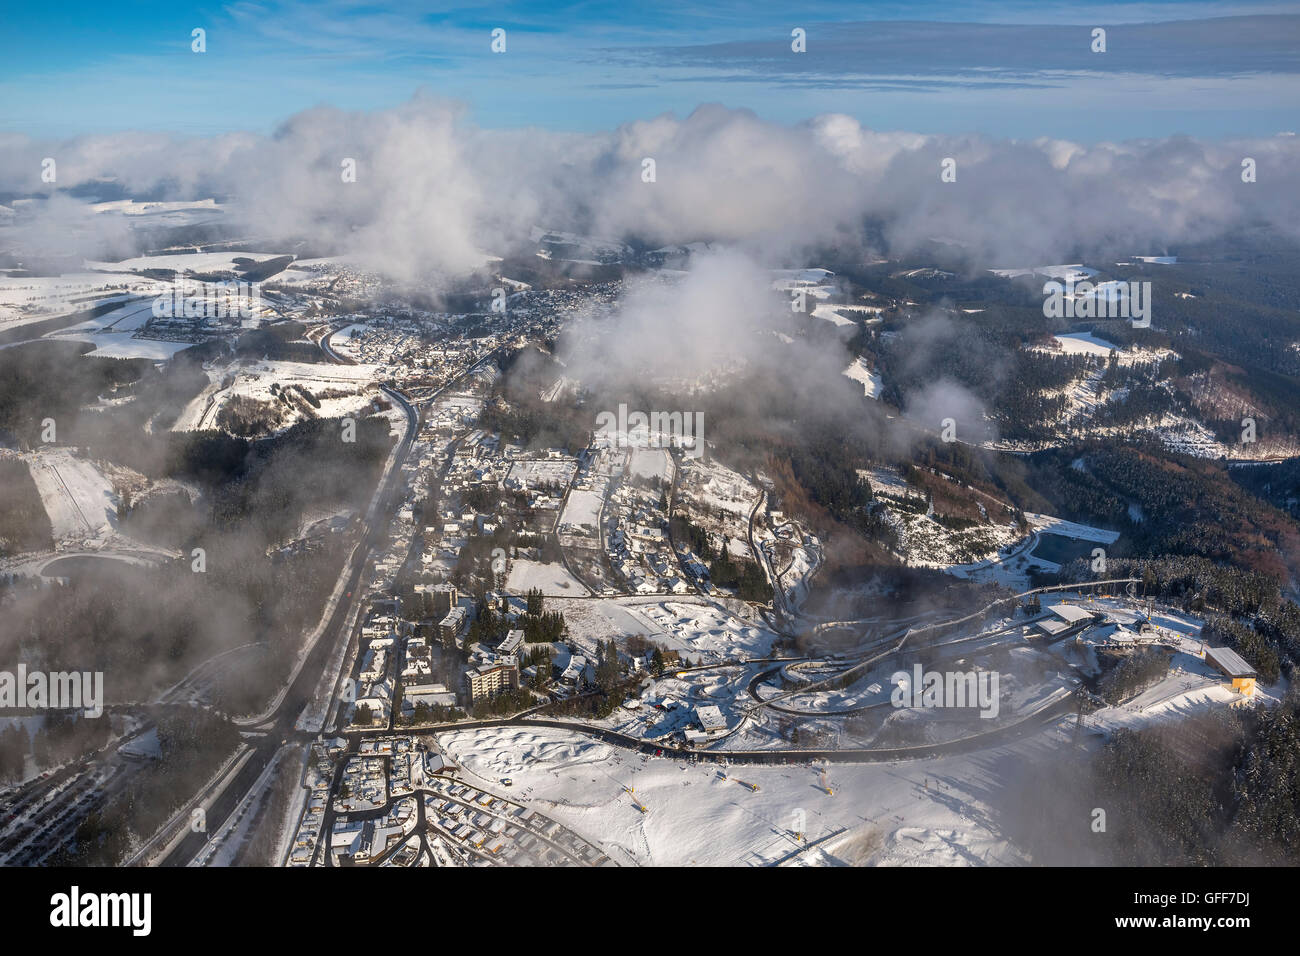 Vista aerea, inverno, neve foto aerea di Winterberg, Hochsauerlandkreis della Renania settentrionale-Vestfalia, Germania, Europa, vista aerea, Foto Stock